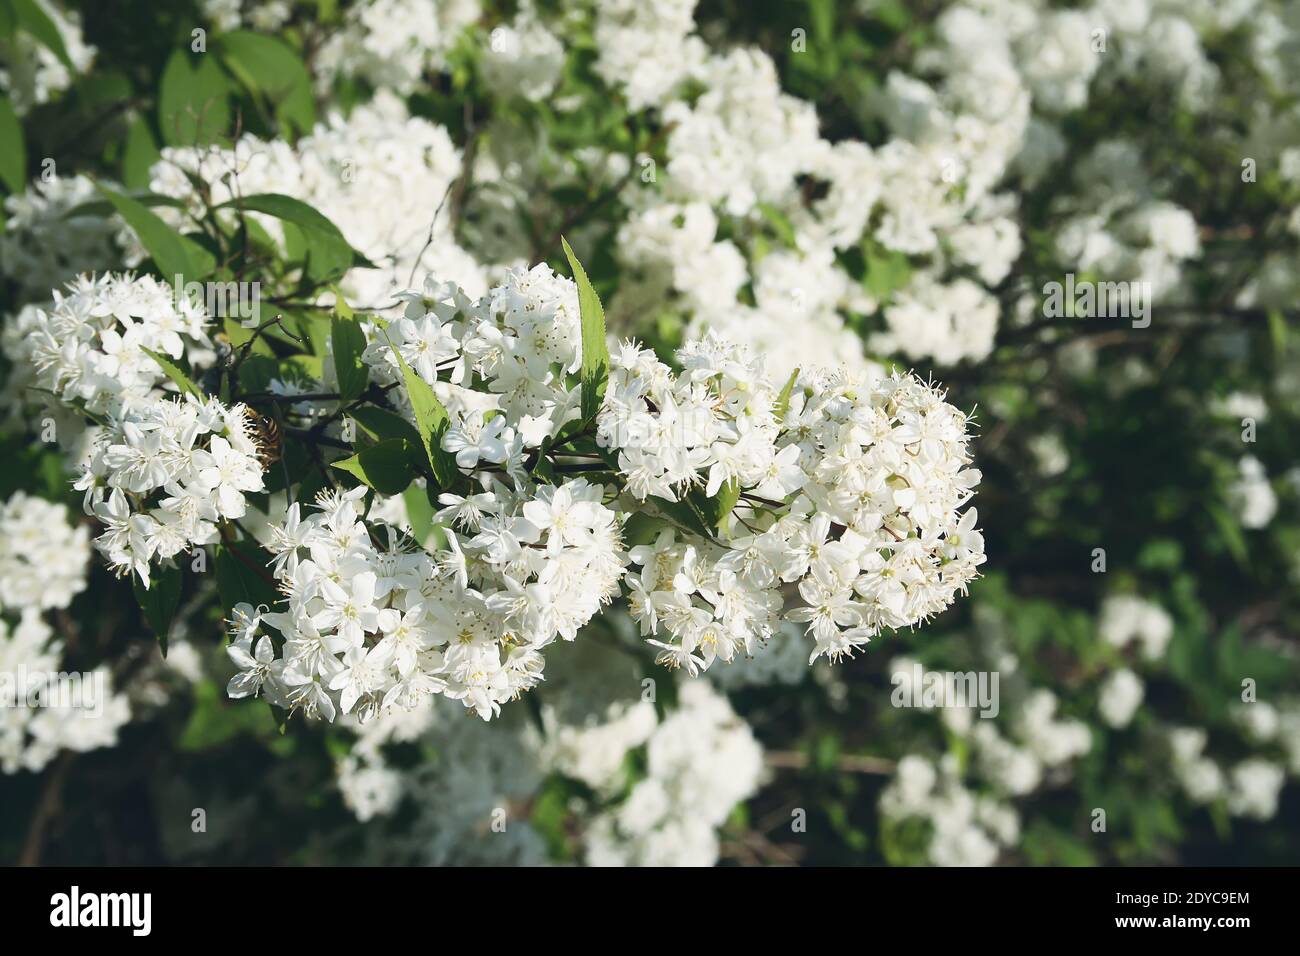 Small white flowers on a bush in spring park. Deutzia lemoinei plant. Stock Photo